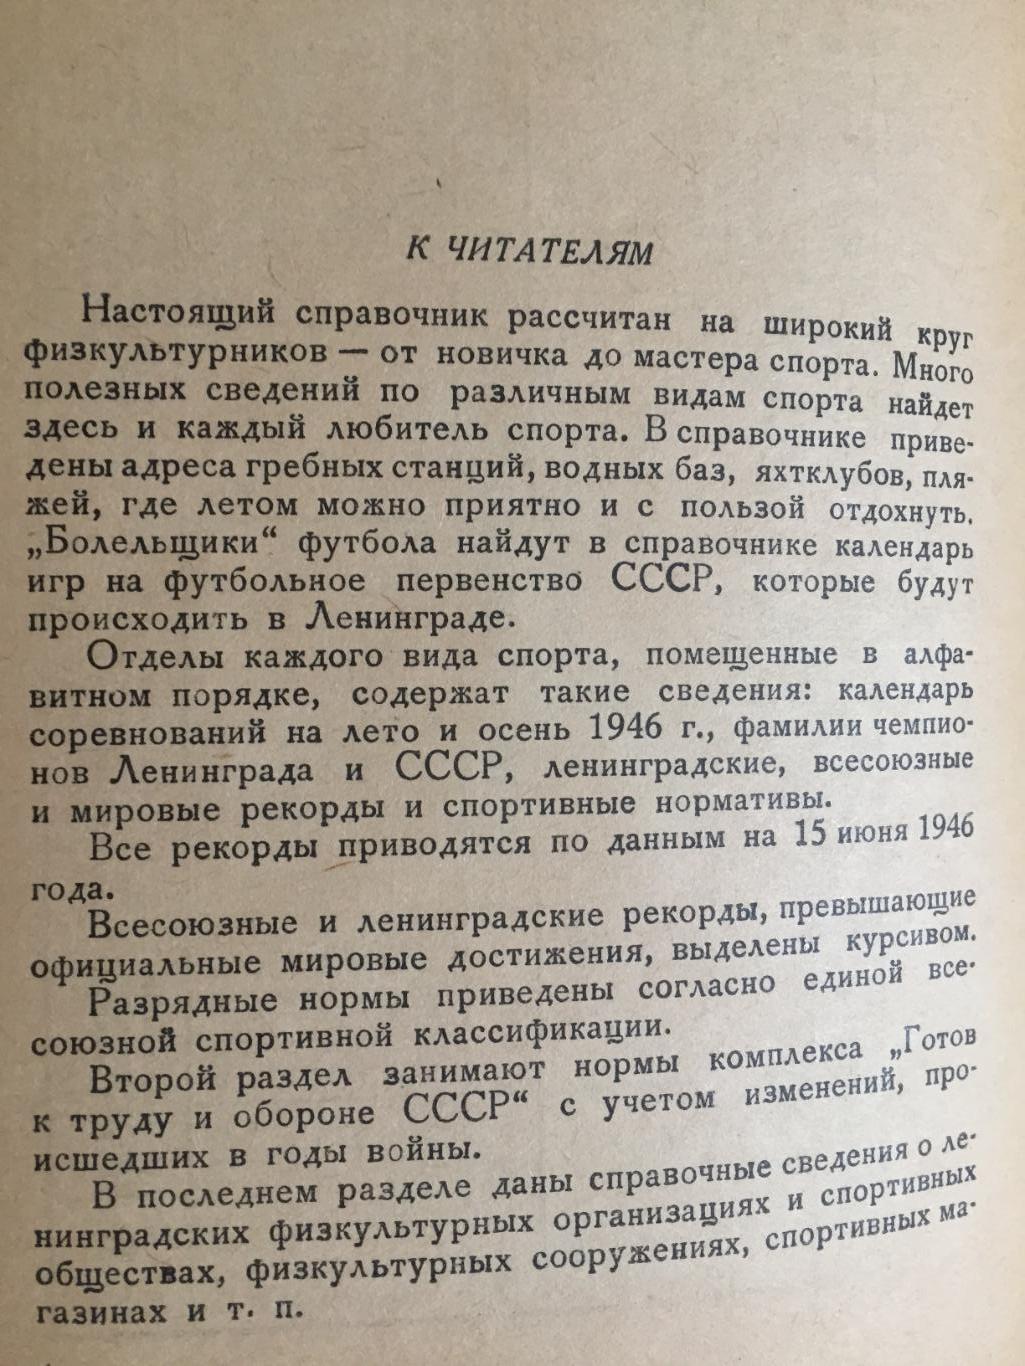 Пендер-Бугровский Спортивный справочник 1946 1